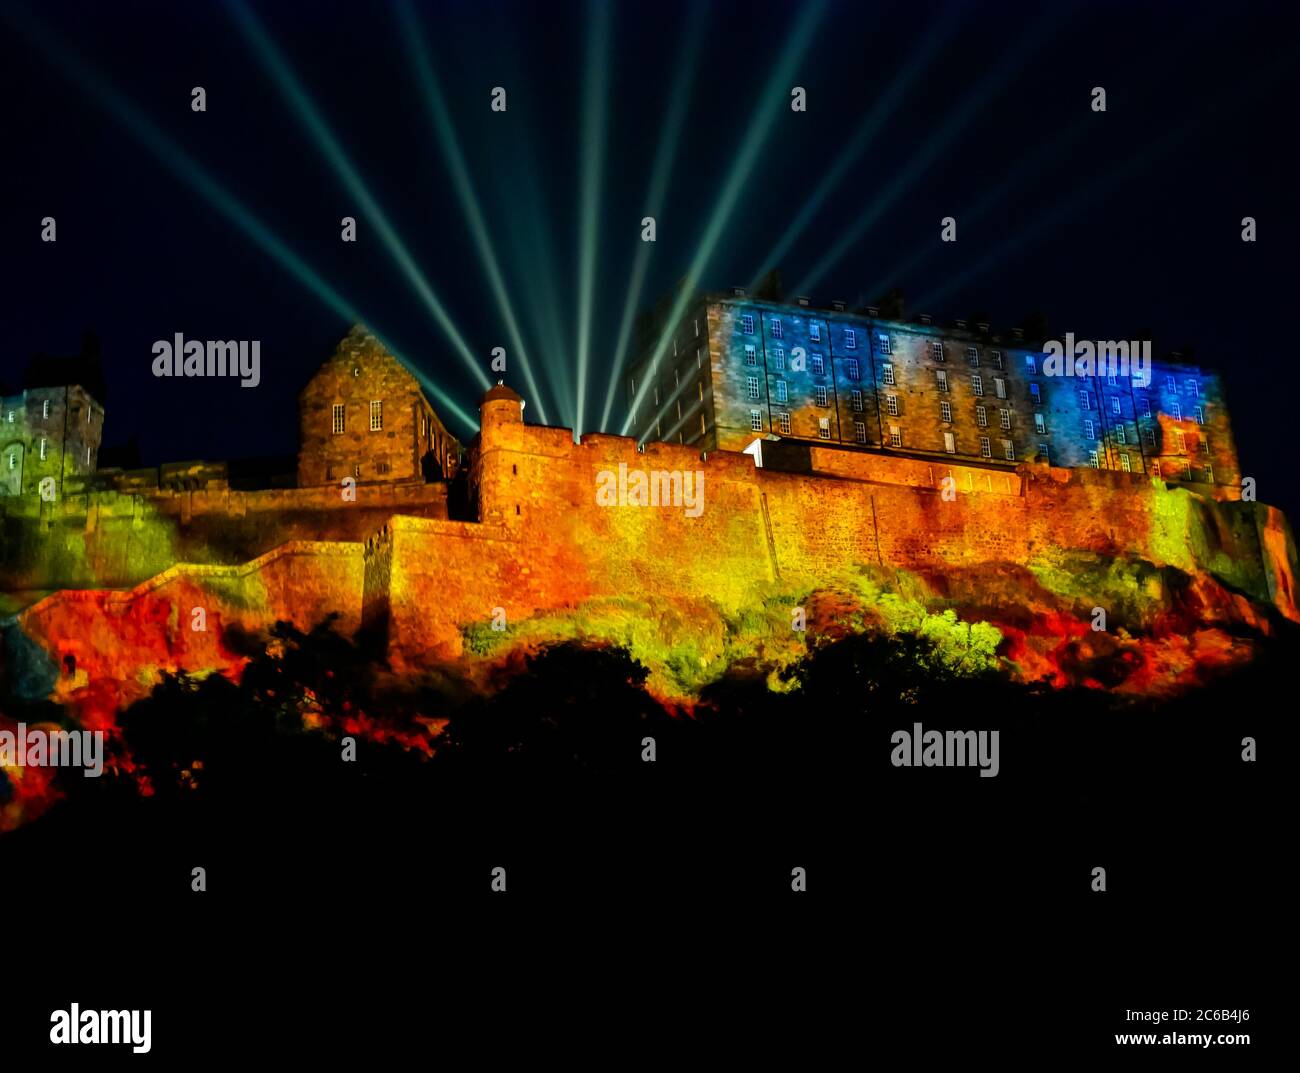 Festival International d'Édimbourg projection de lumière de l'événement d'ouverture Standard Life sur le château d'Édimbourg, Deep Time en 2106, Écosse, Royaume-Uni la nuit Banque D'Images